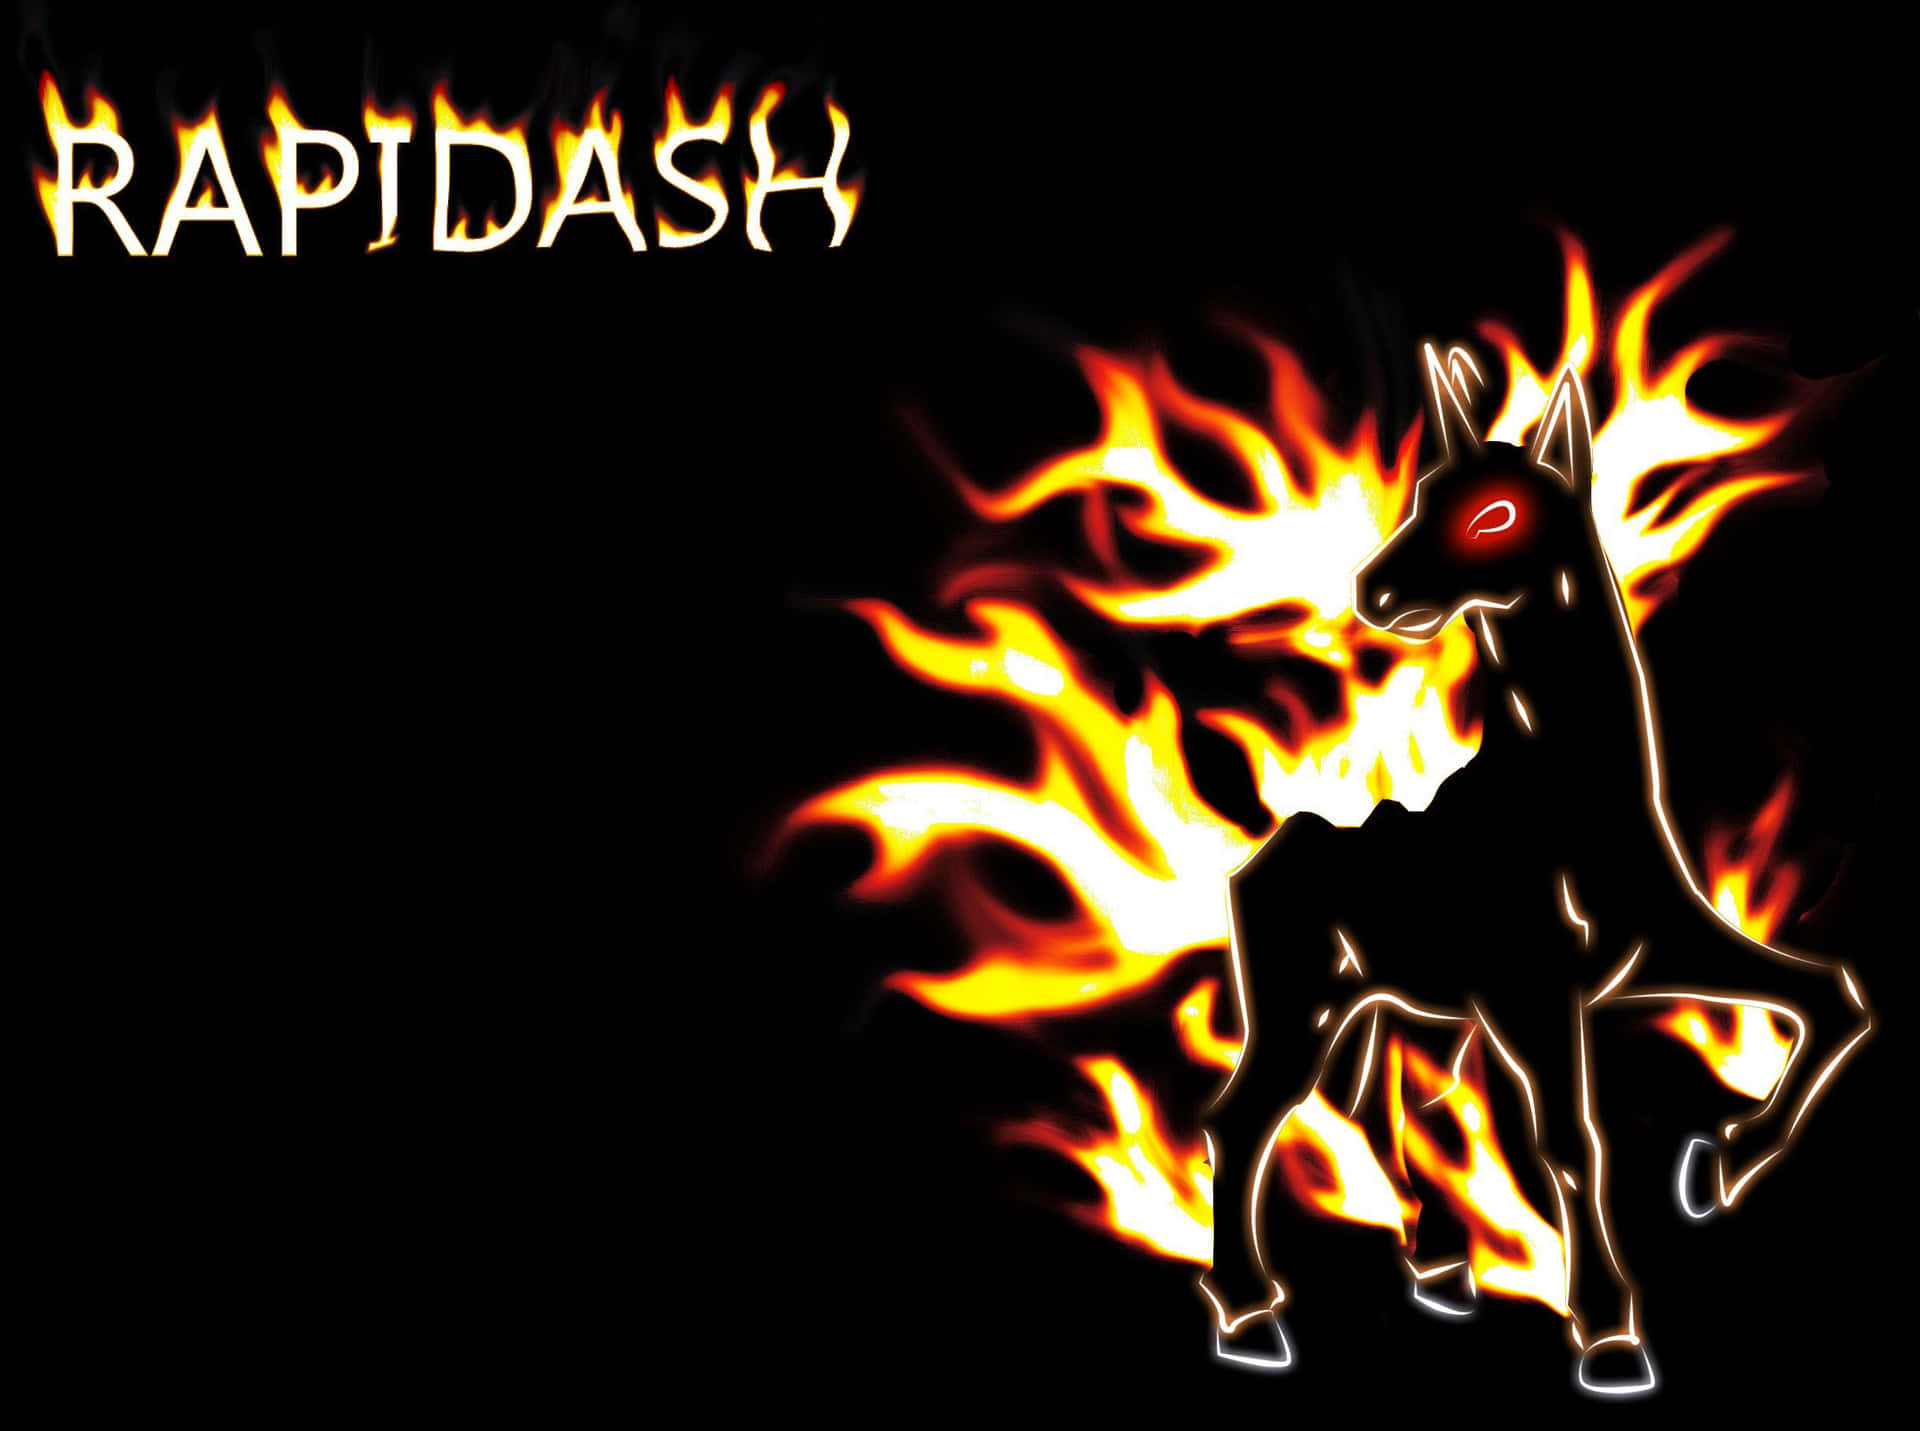 Rapidash Flame Artwork Wallpaper